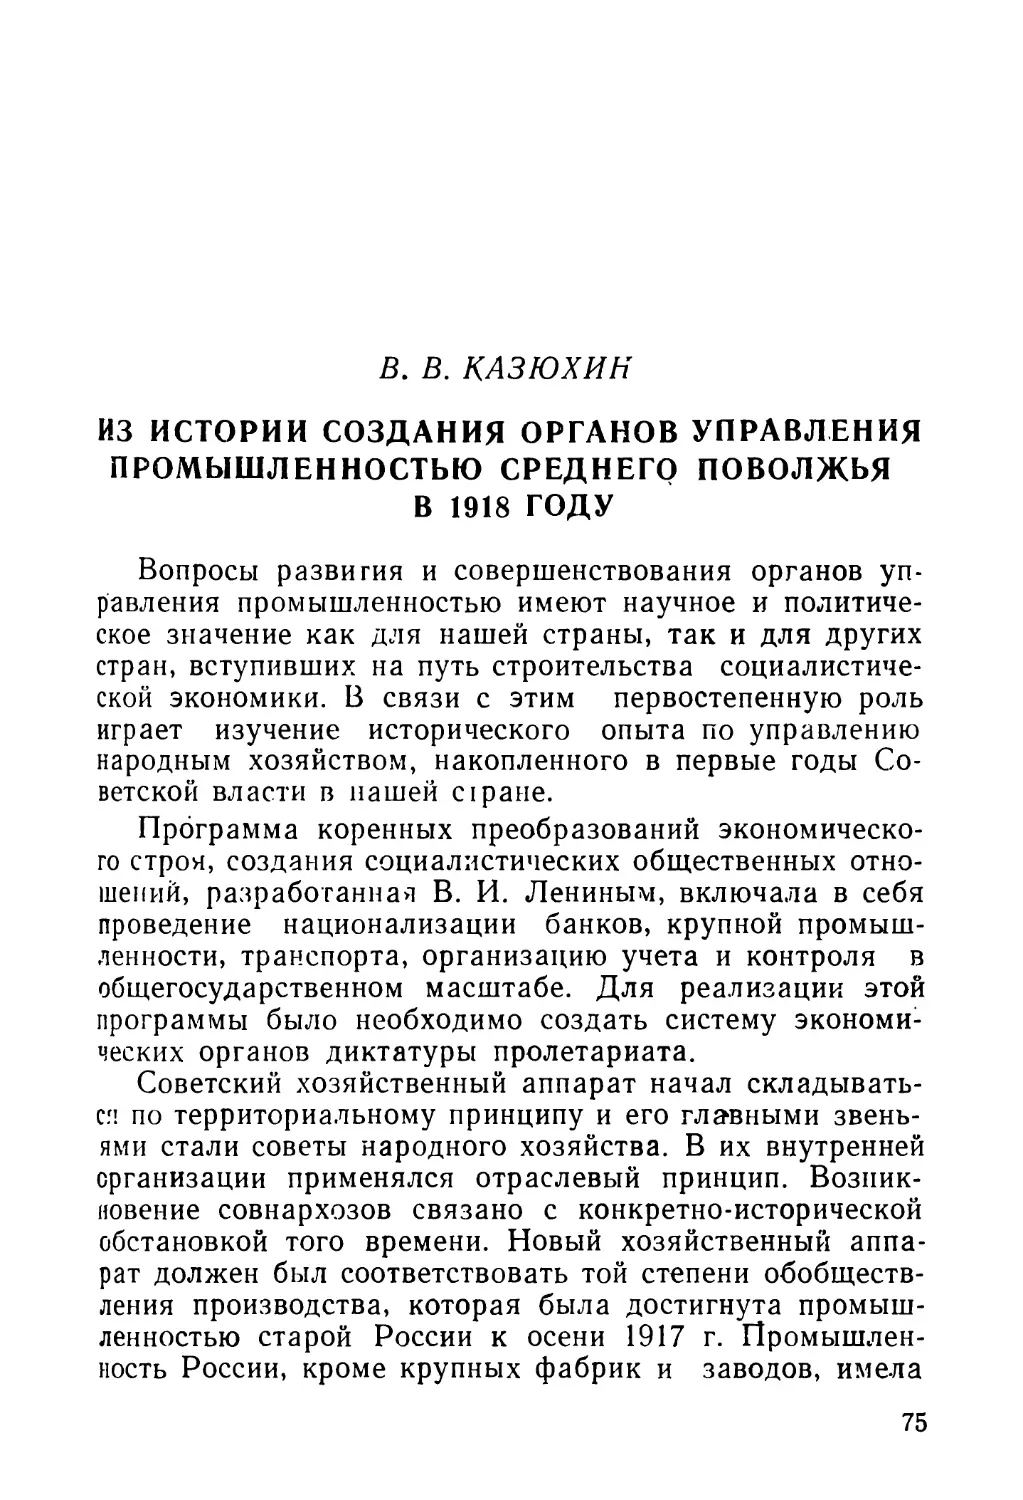 В. В. Казюхин. Из истории создания органов управления промышленностью Среднего Поволжья в 1918 году